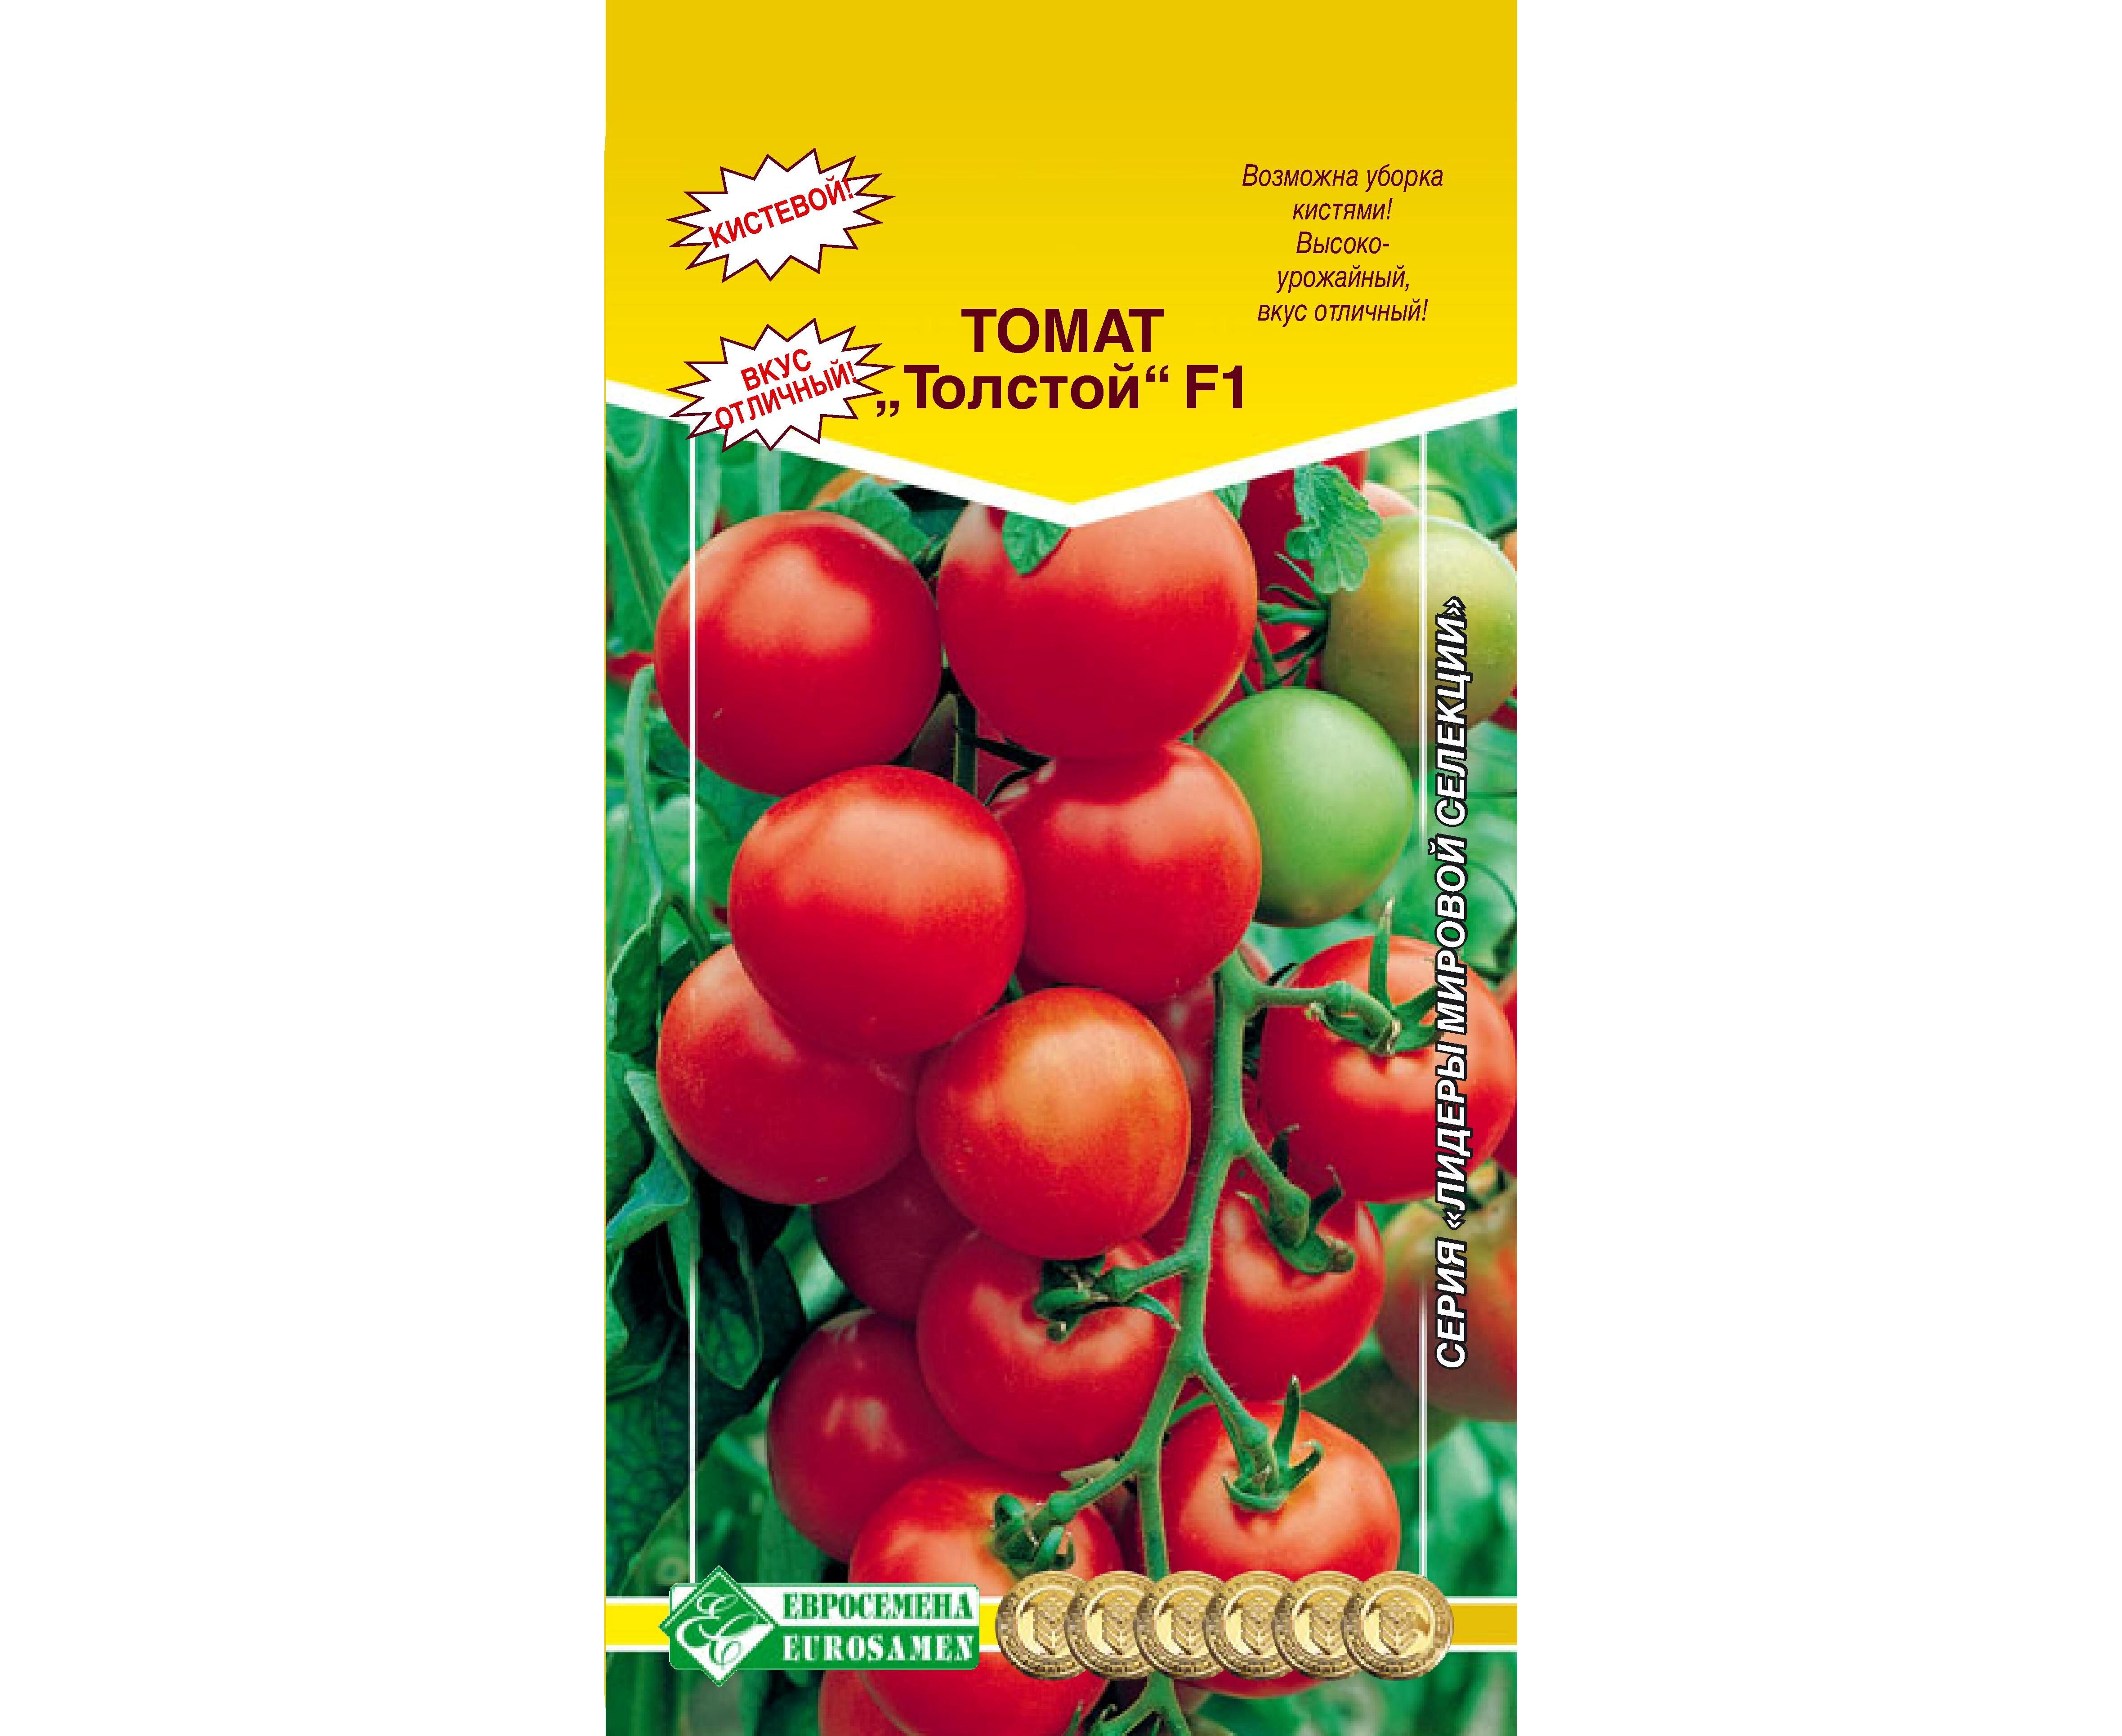 Купить томаты толстой. Томат томат толстой f1. Томат яшма f1 (Евросемена). Томат пламя f1 Евросемена Золотая коллекция.